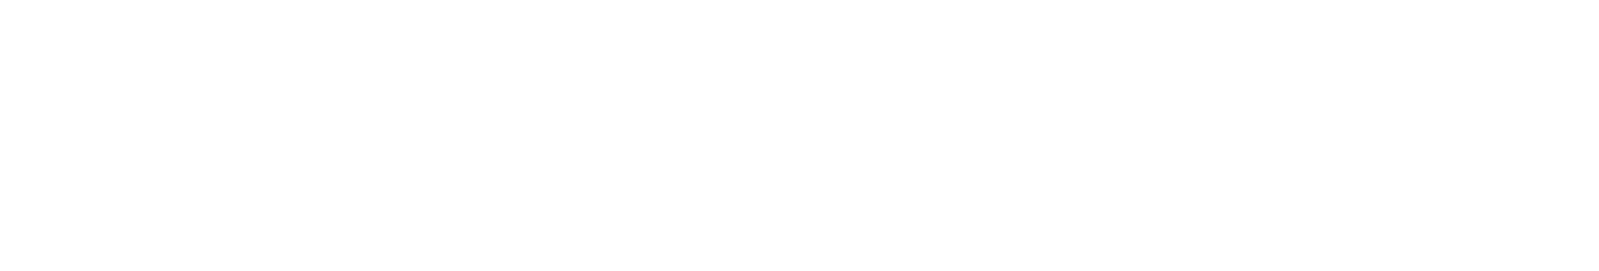 National Presto Industries
 logo large for dark backgrounds (transparent PNG)